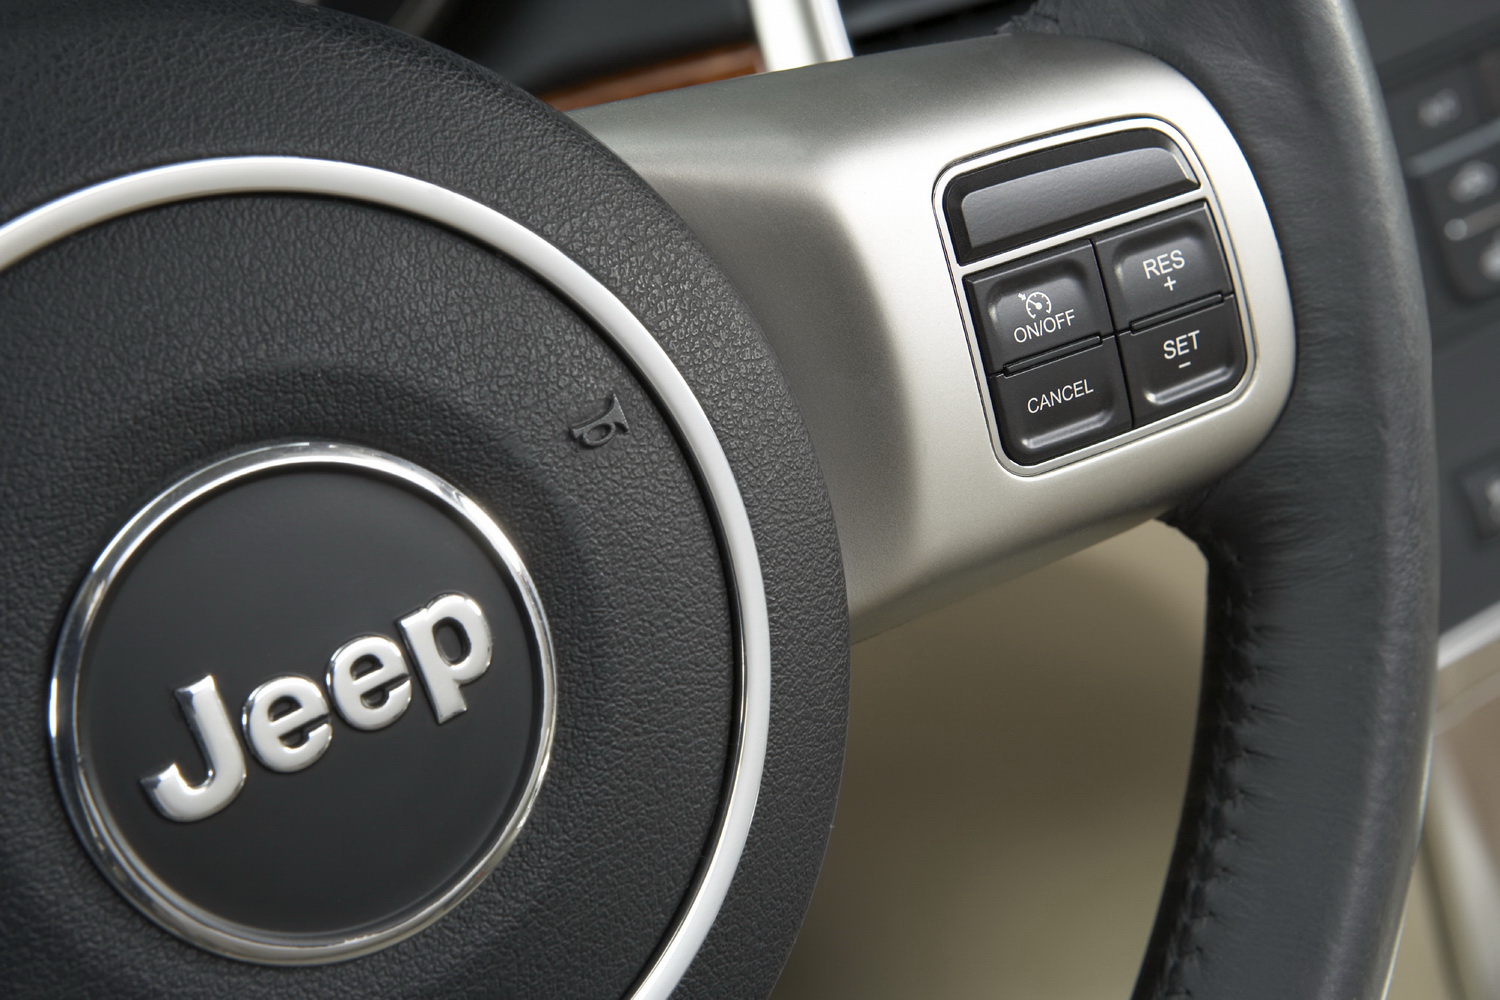 2011 Jeep grand cherokee wood steering wheel #3